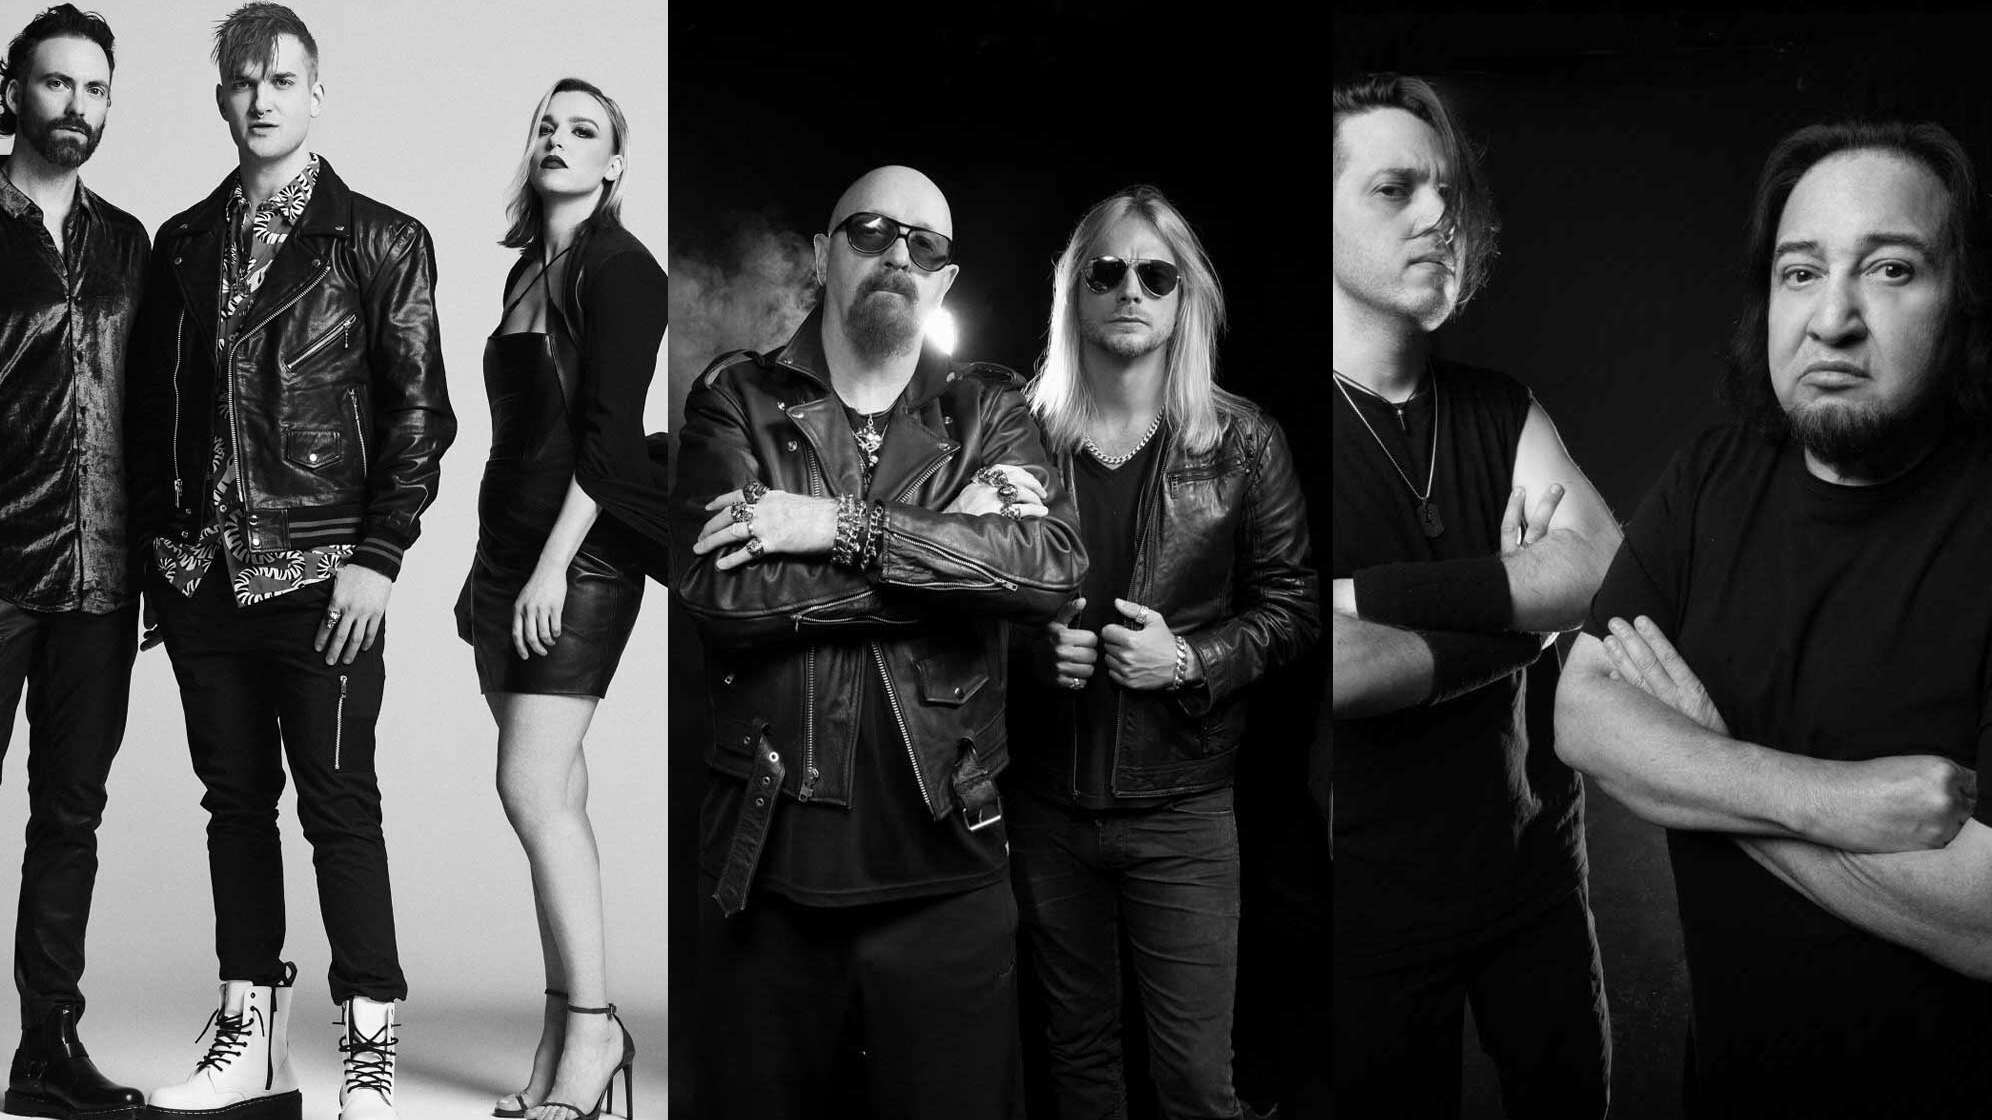 Bandfotos von Halestorm, Judas Priest und Fear Factory